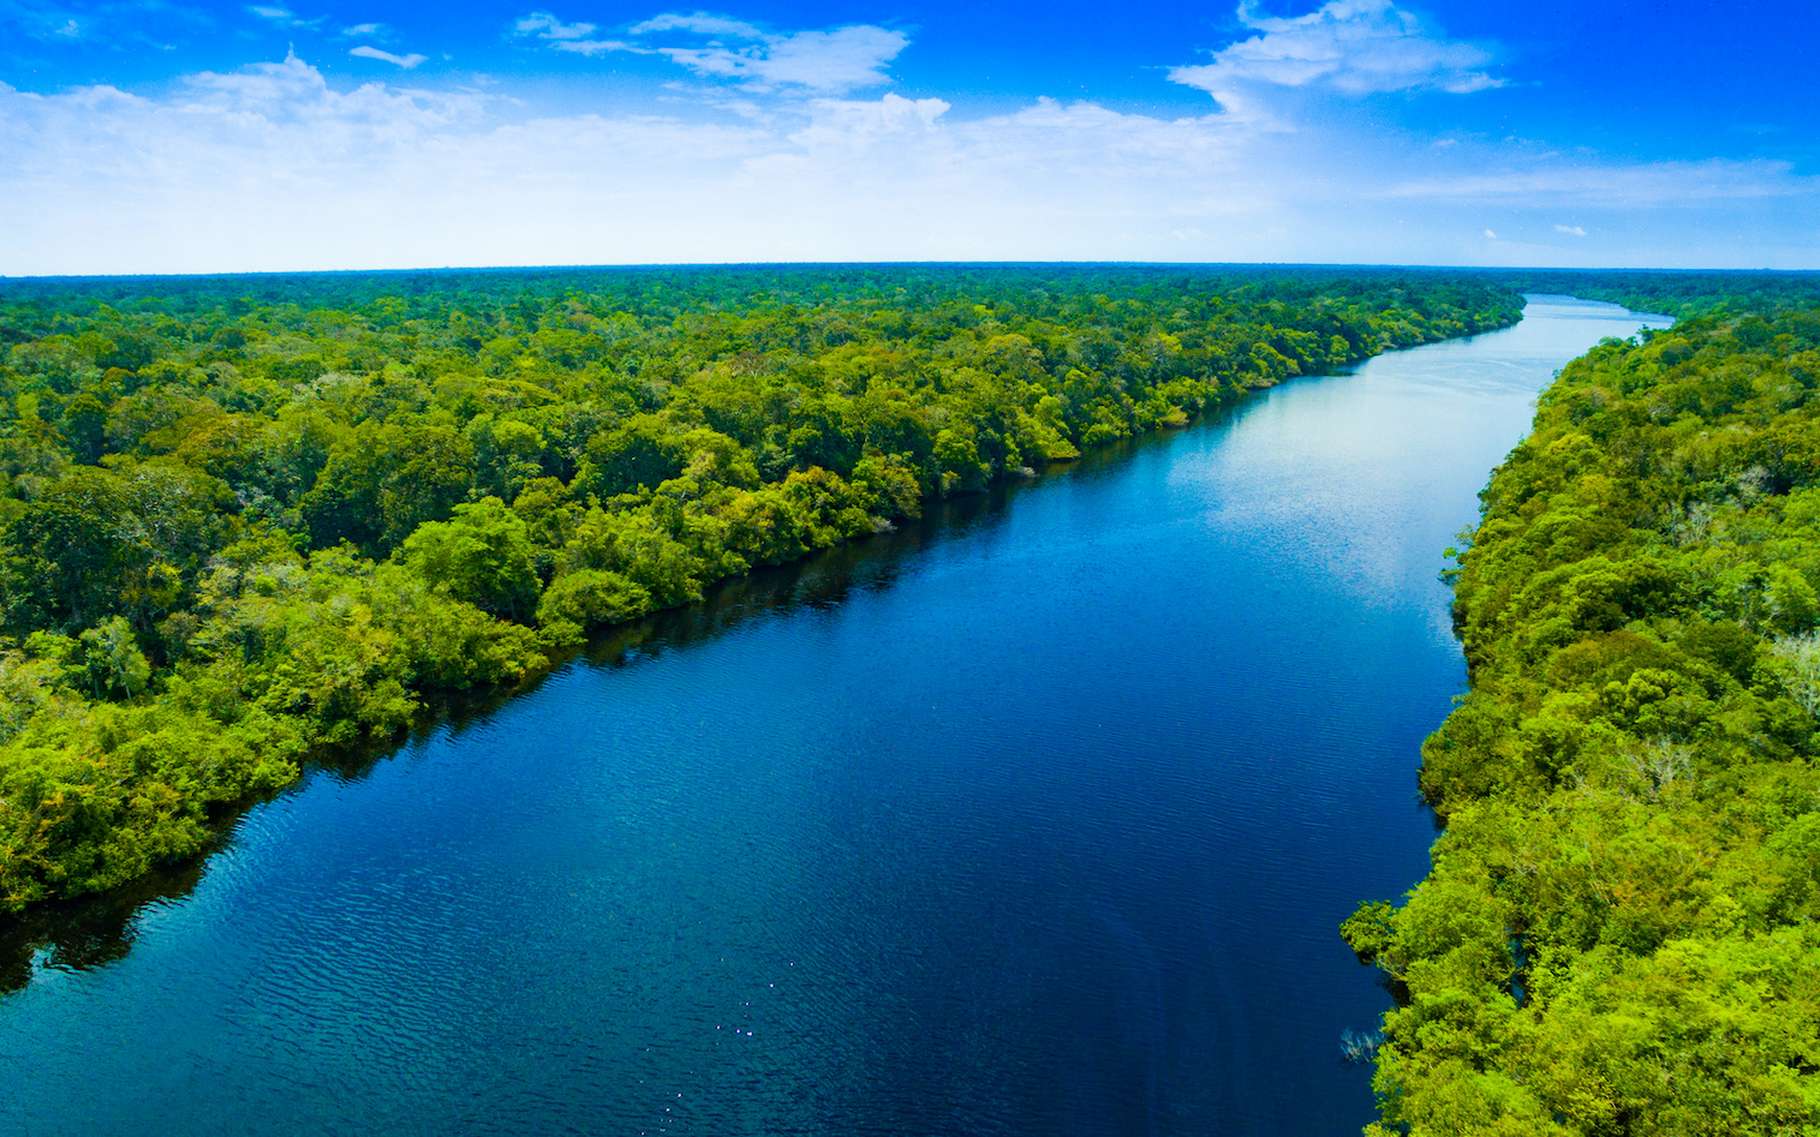 La luxuriante forêt amazonienne apparaît aujourd’hui plus proche que jamais de son point de basculement. En cause : le réchauffement climatique et la déforestation. © prasitphoto, Adobe Stock